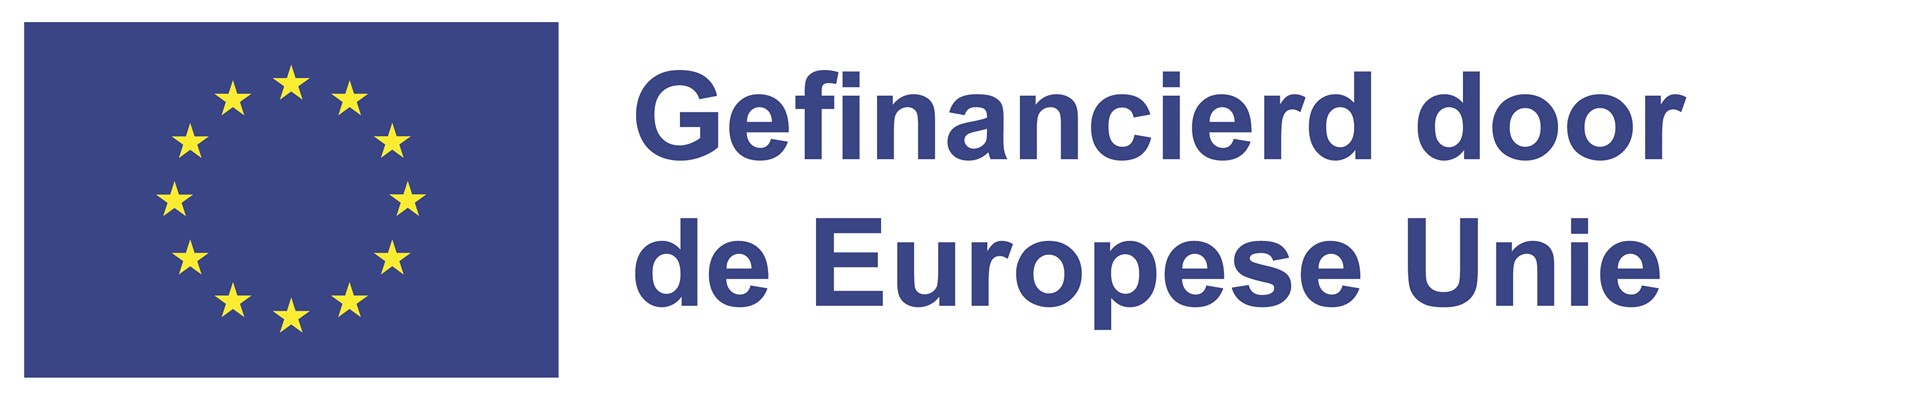 NL Gefinancierd door de Europese Unie_POS.jpg